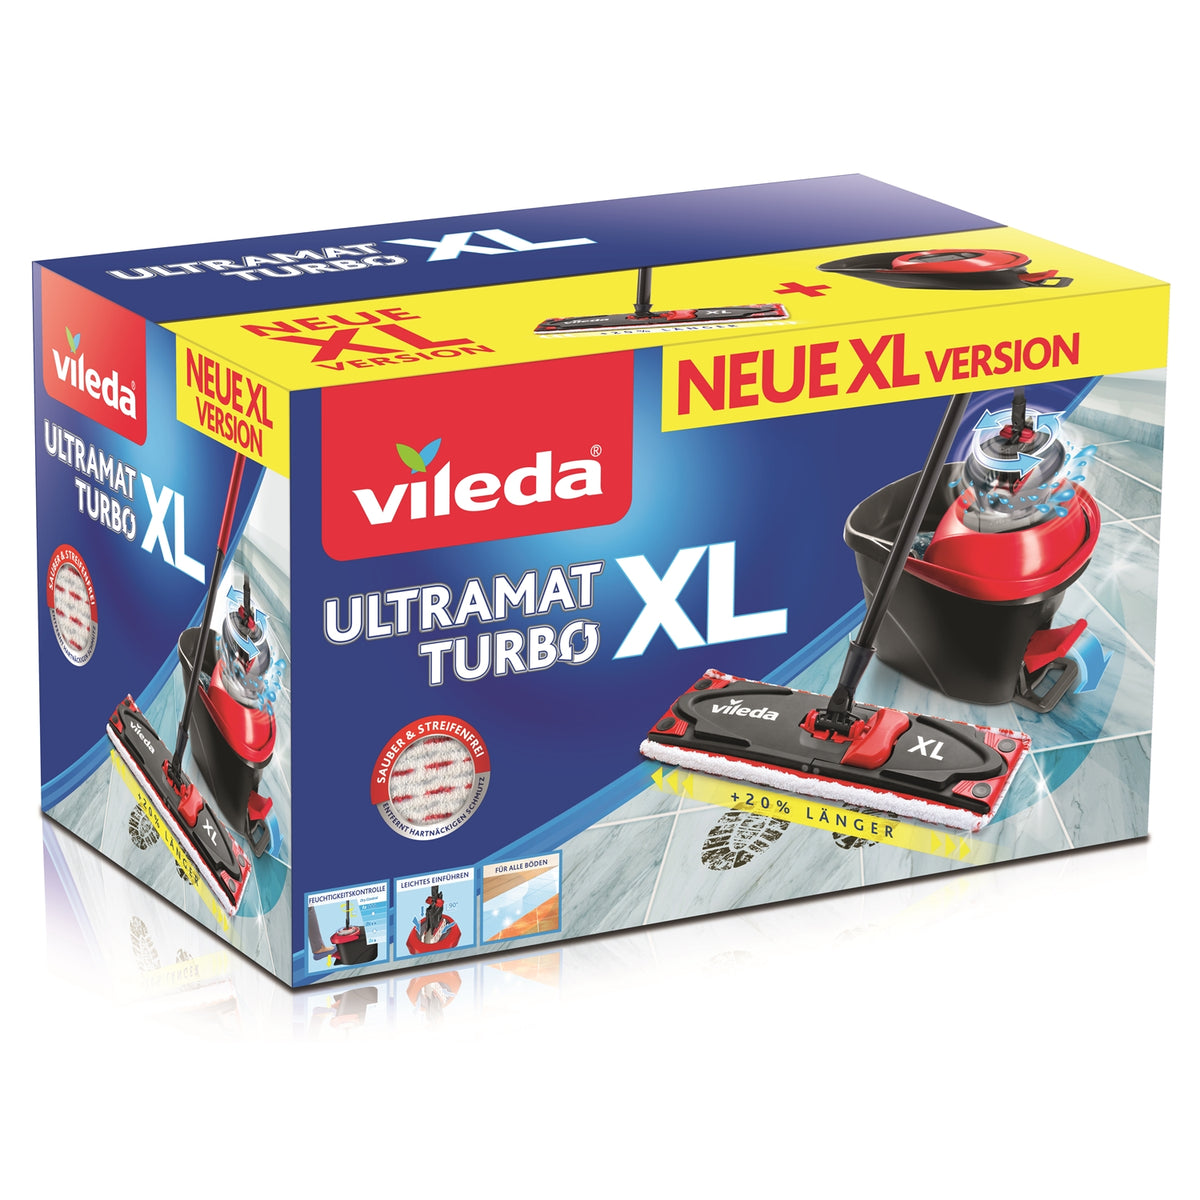 Vileda Recharge UltraMax, paquet de 2, convient à tous les systèmes de  balais à plats Vileda